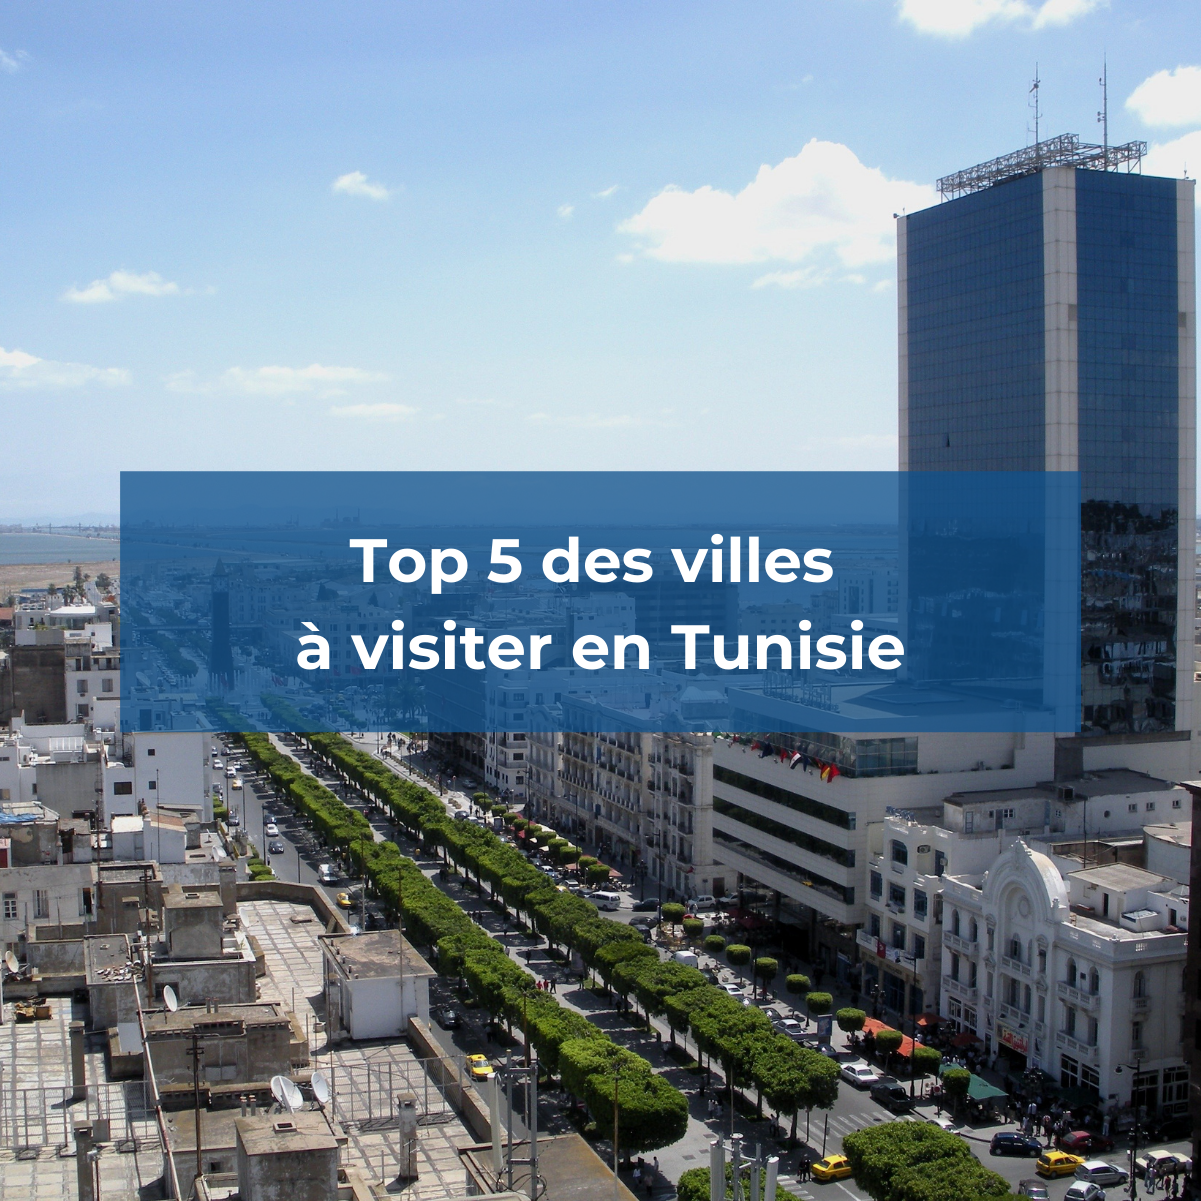 Découvrez notre top 5 des villes à visiter en Tunisie